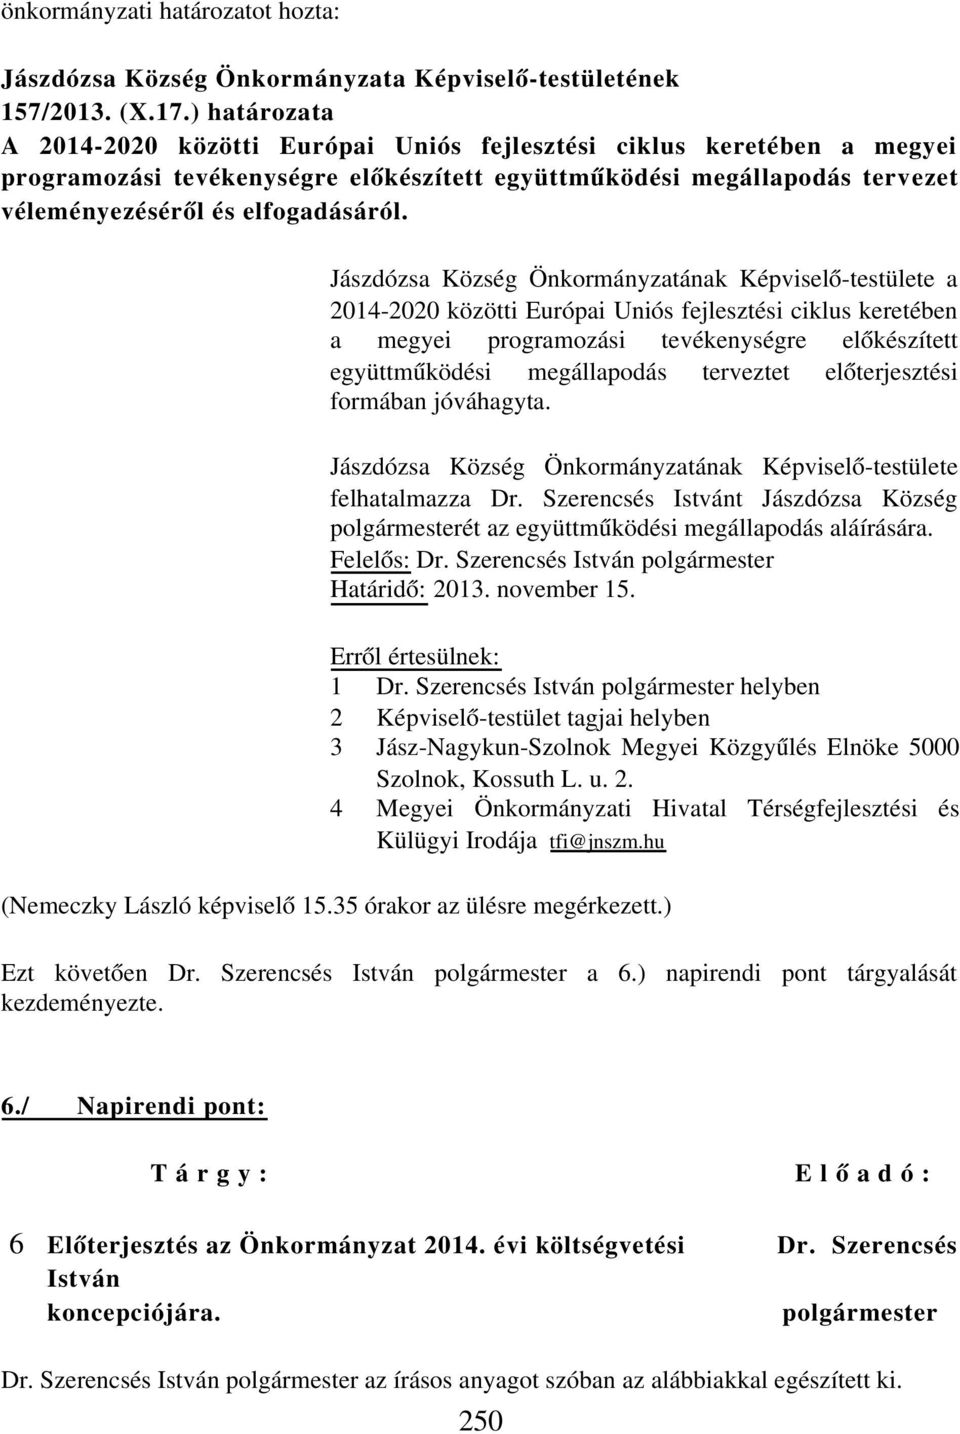 Jászdózsa Község Önkormányzatának Képviselő-testülete a 2014-2020 közötti Európai Uniós fejlesztési ciklus keretében a megyei programozási tevékenységre előkészített együttműködési megállapodás